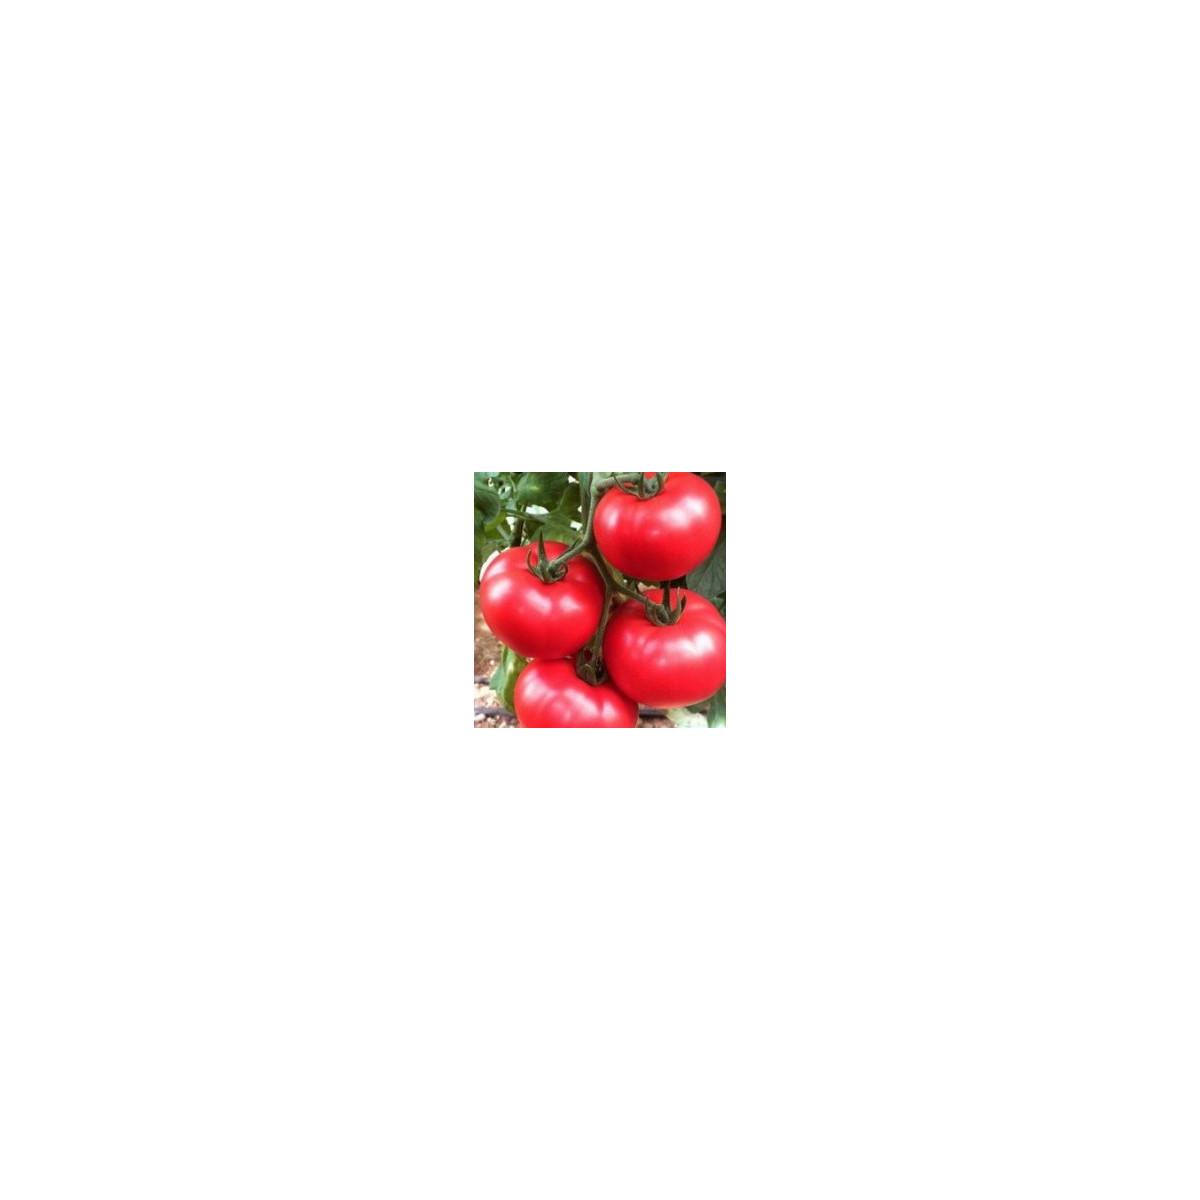 Rajče tyčkové hybridní Virginia F1 - semena rajčete - 5 ks